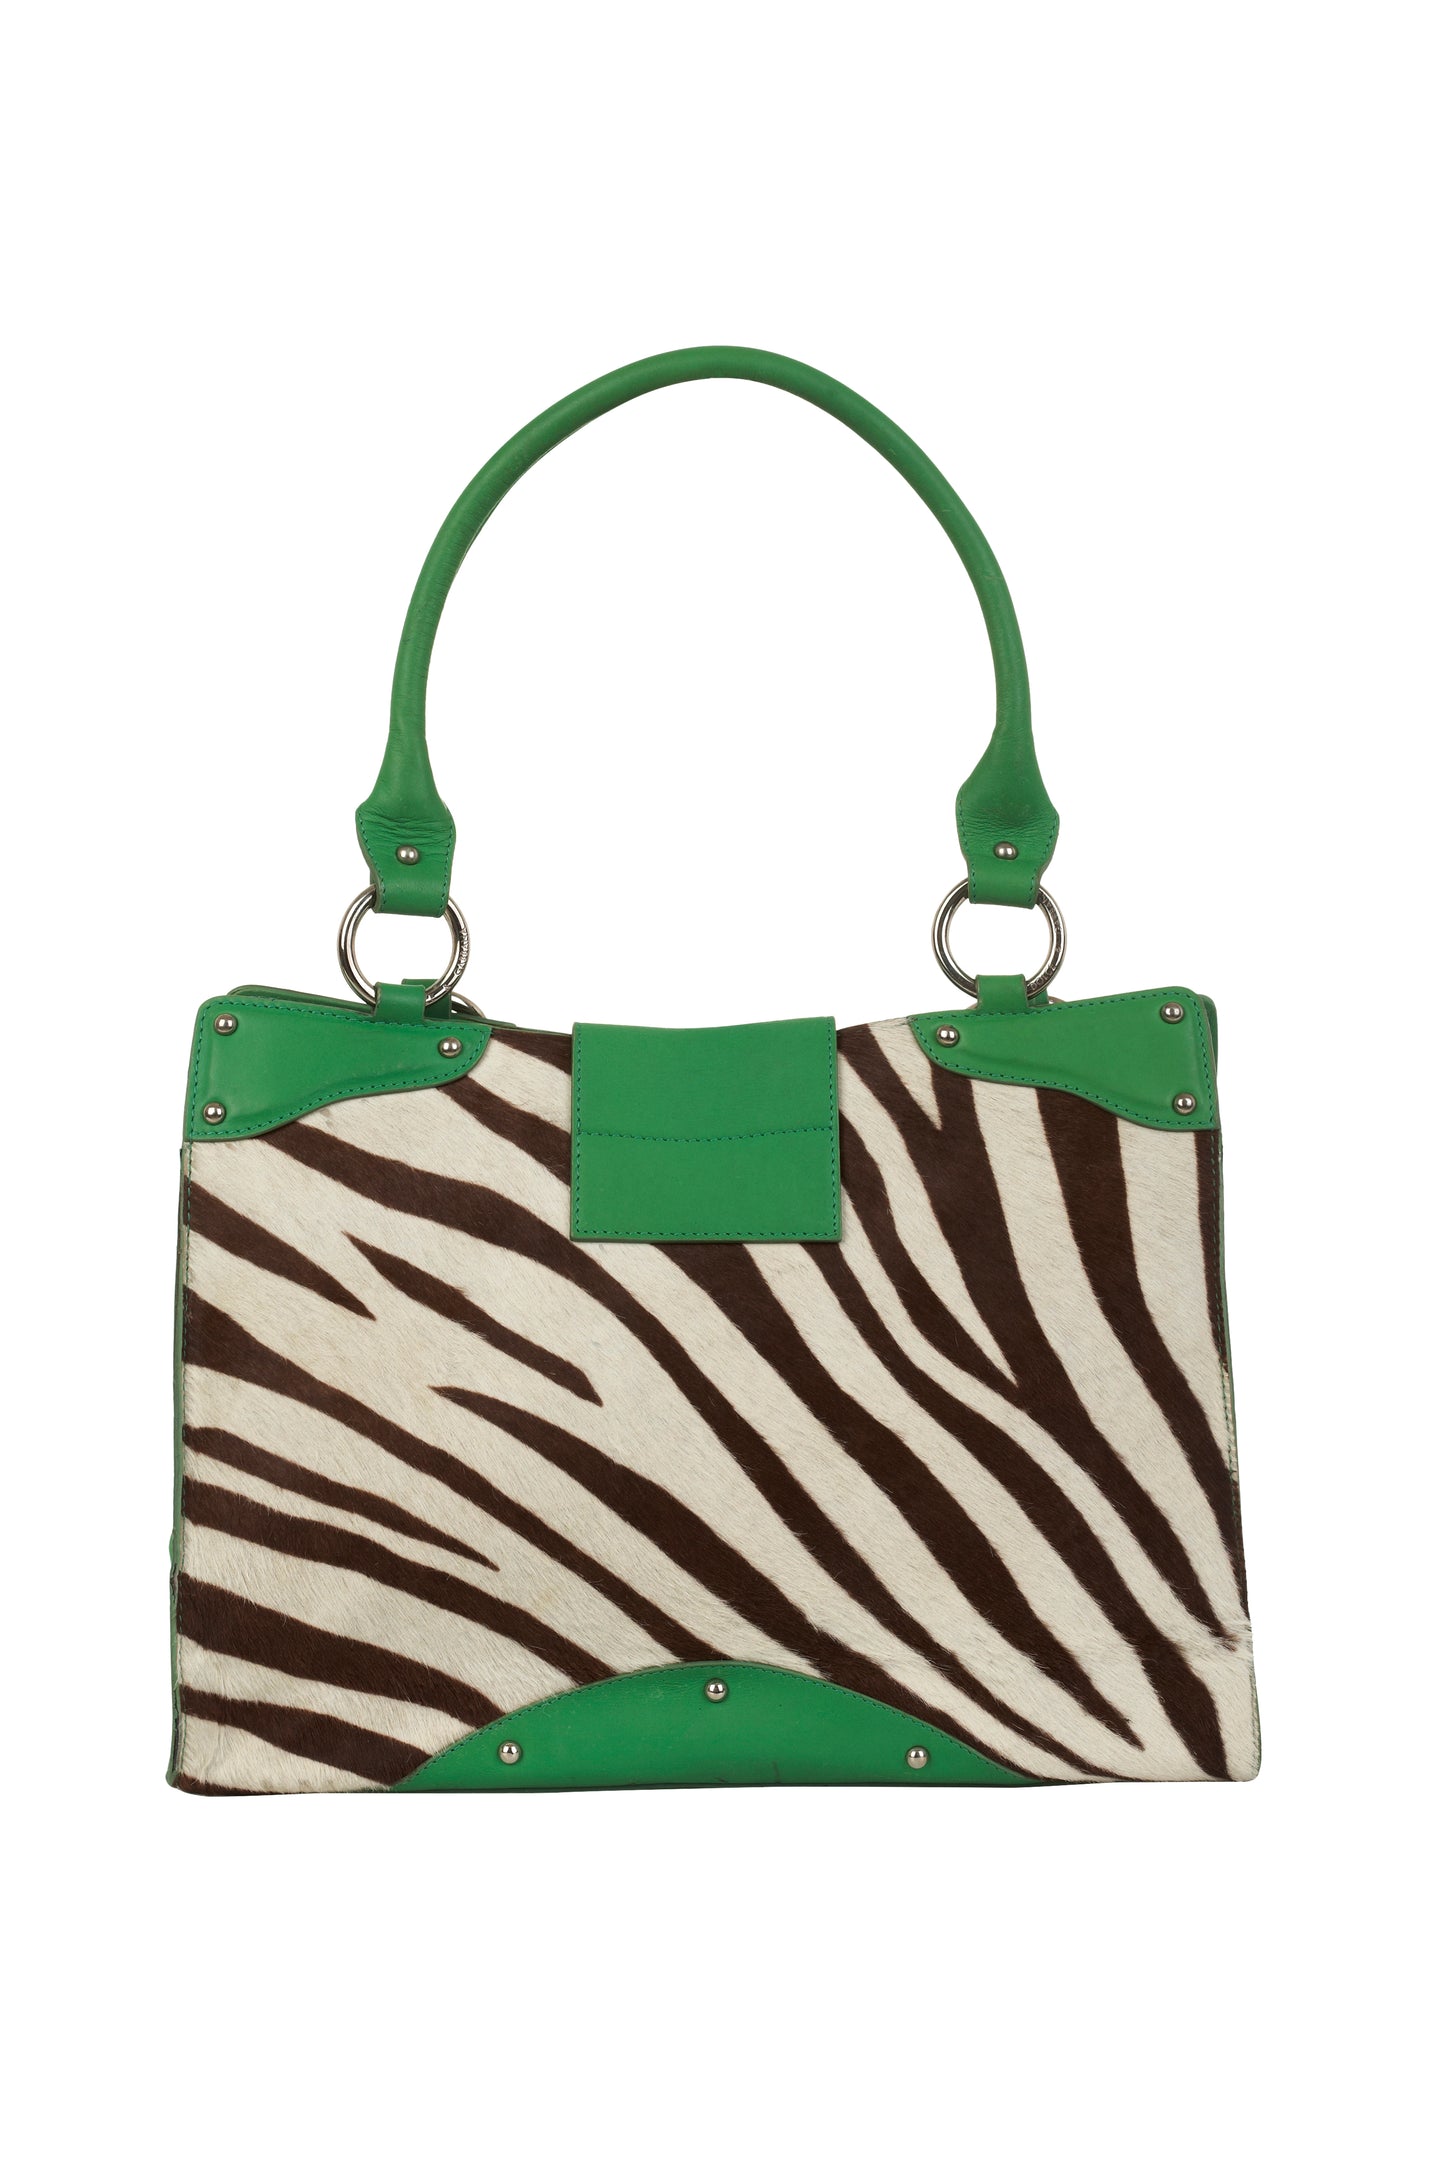 Dolce & Gabbana green and zebra print mini tote bag